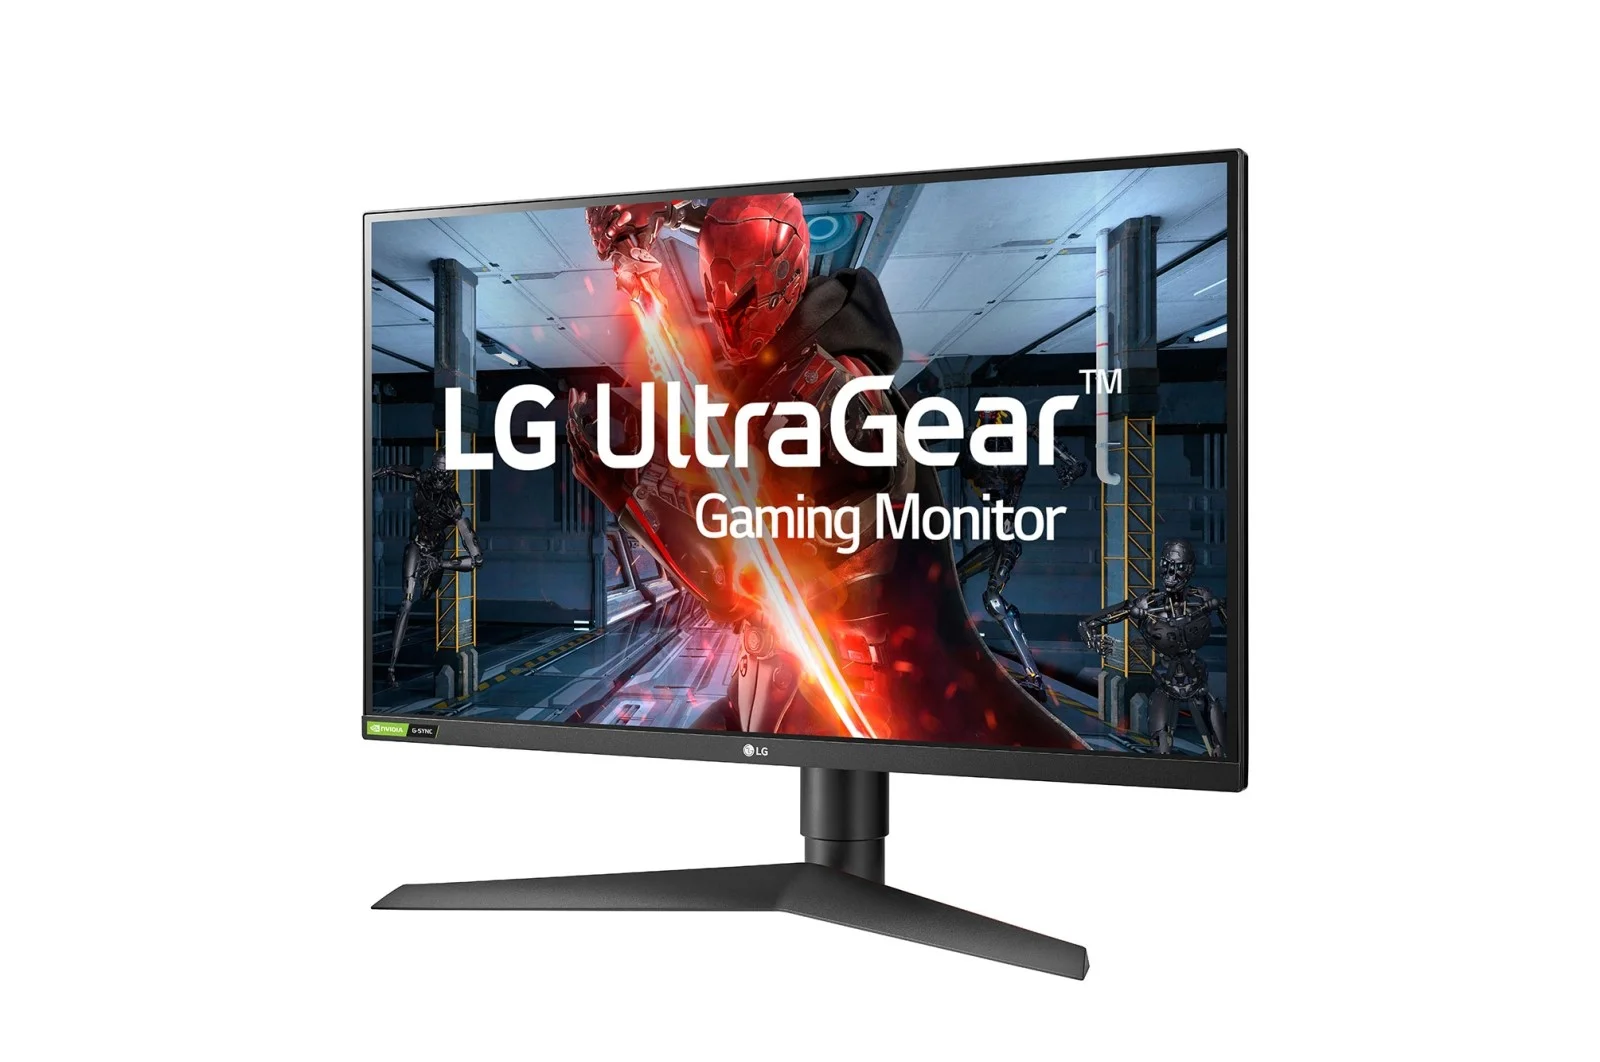 LG представила два геймерских монитора серии UltraGear - фото 1